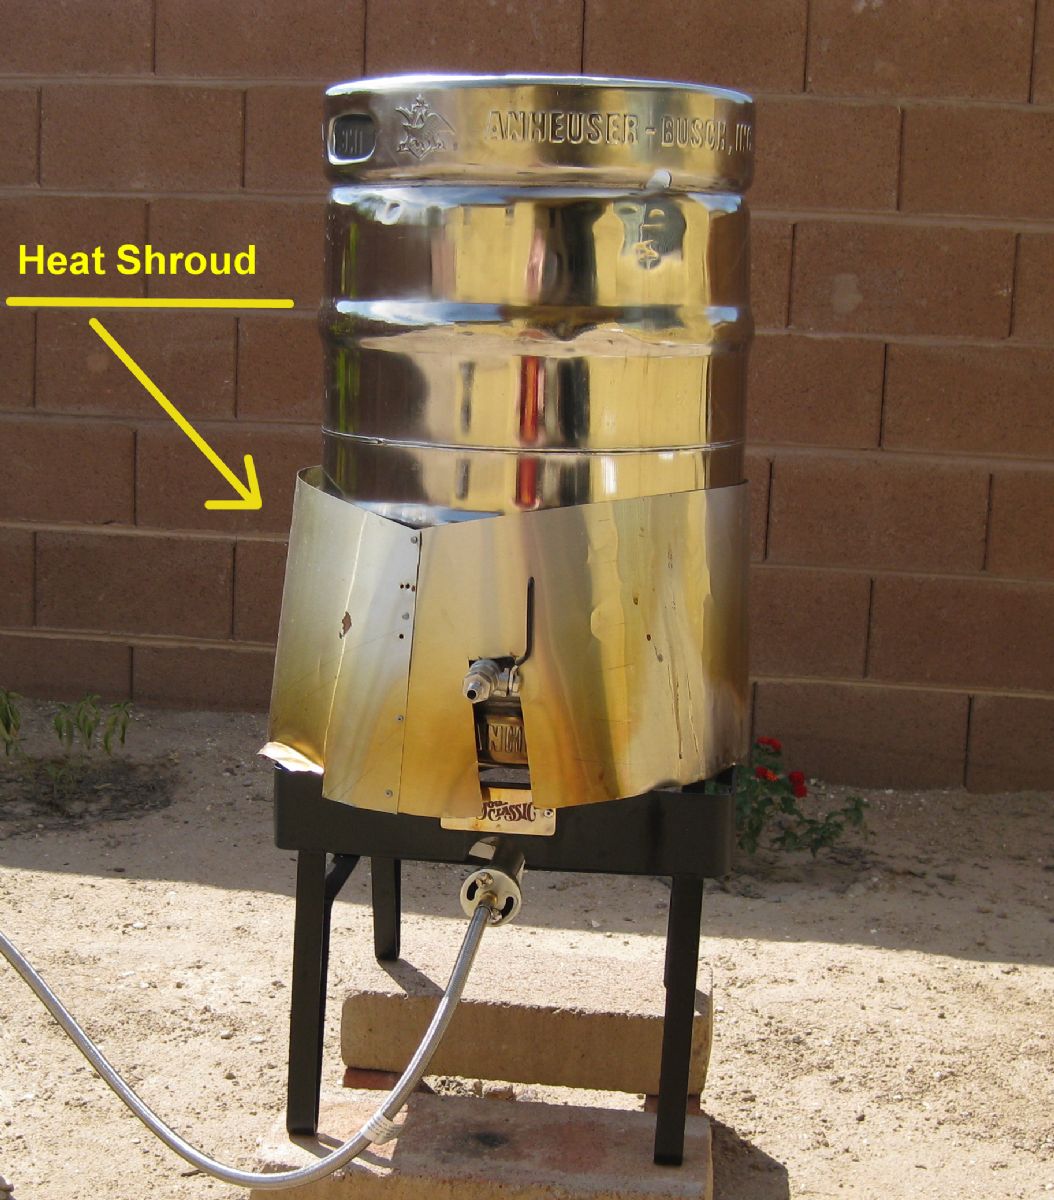 Heat Shroud/Shield on Brew Kettle